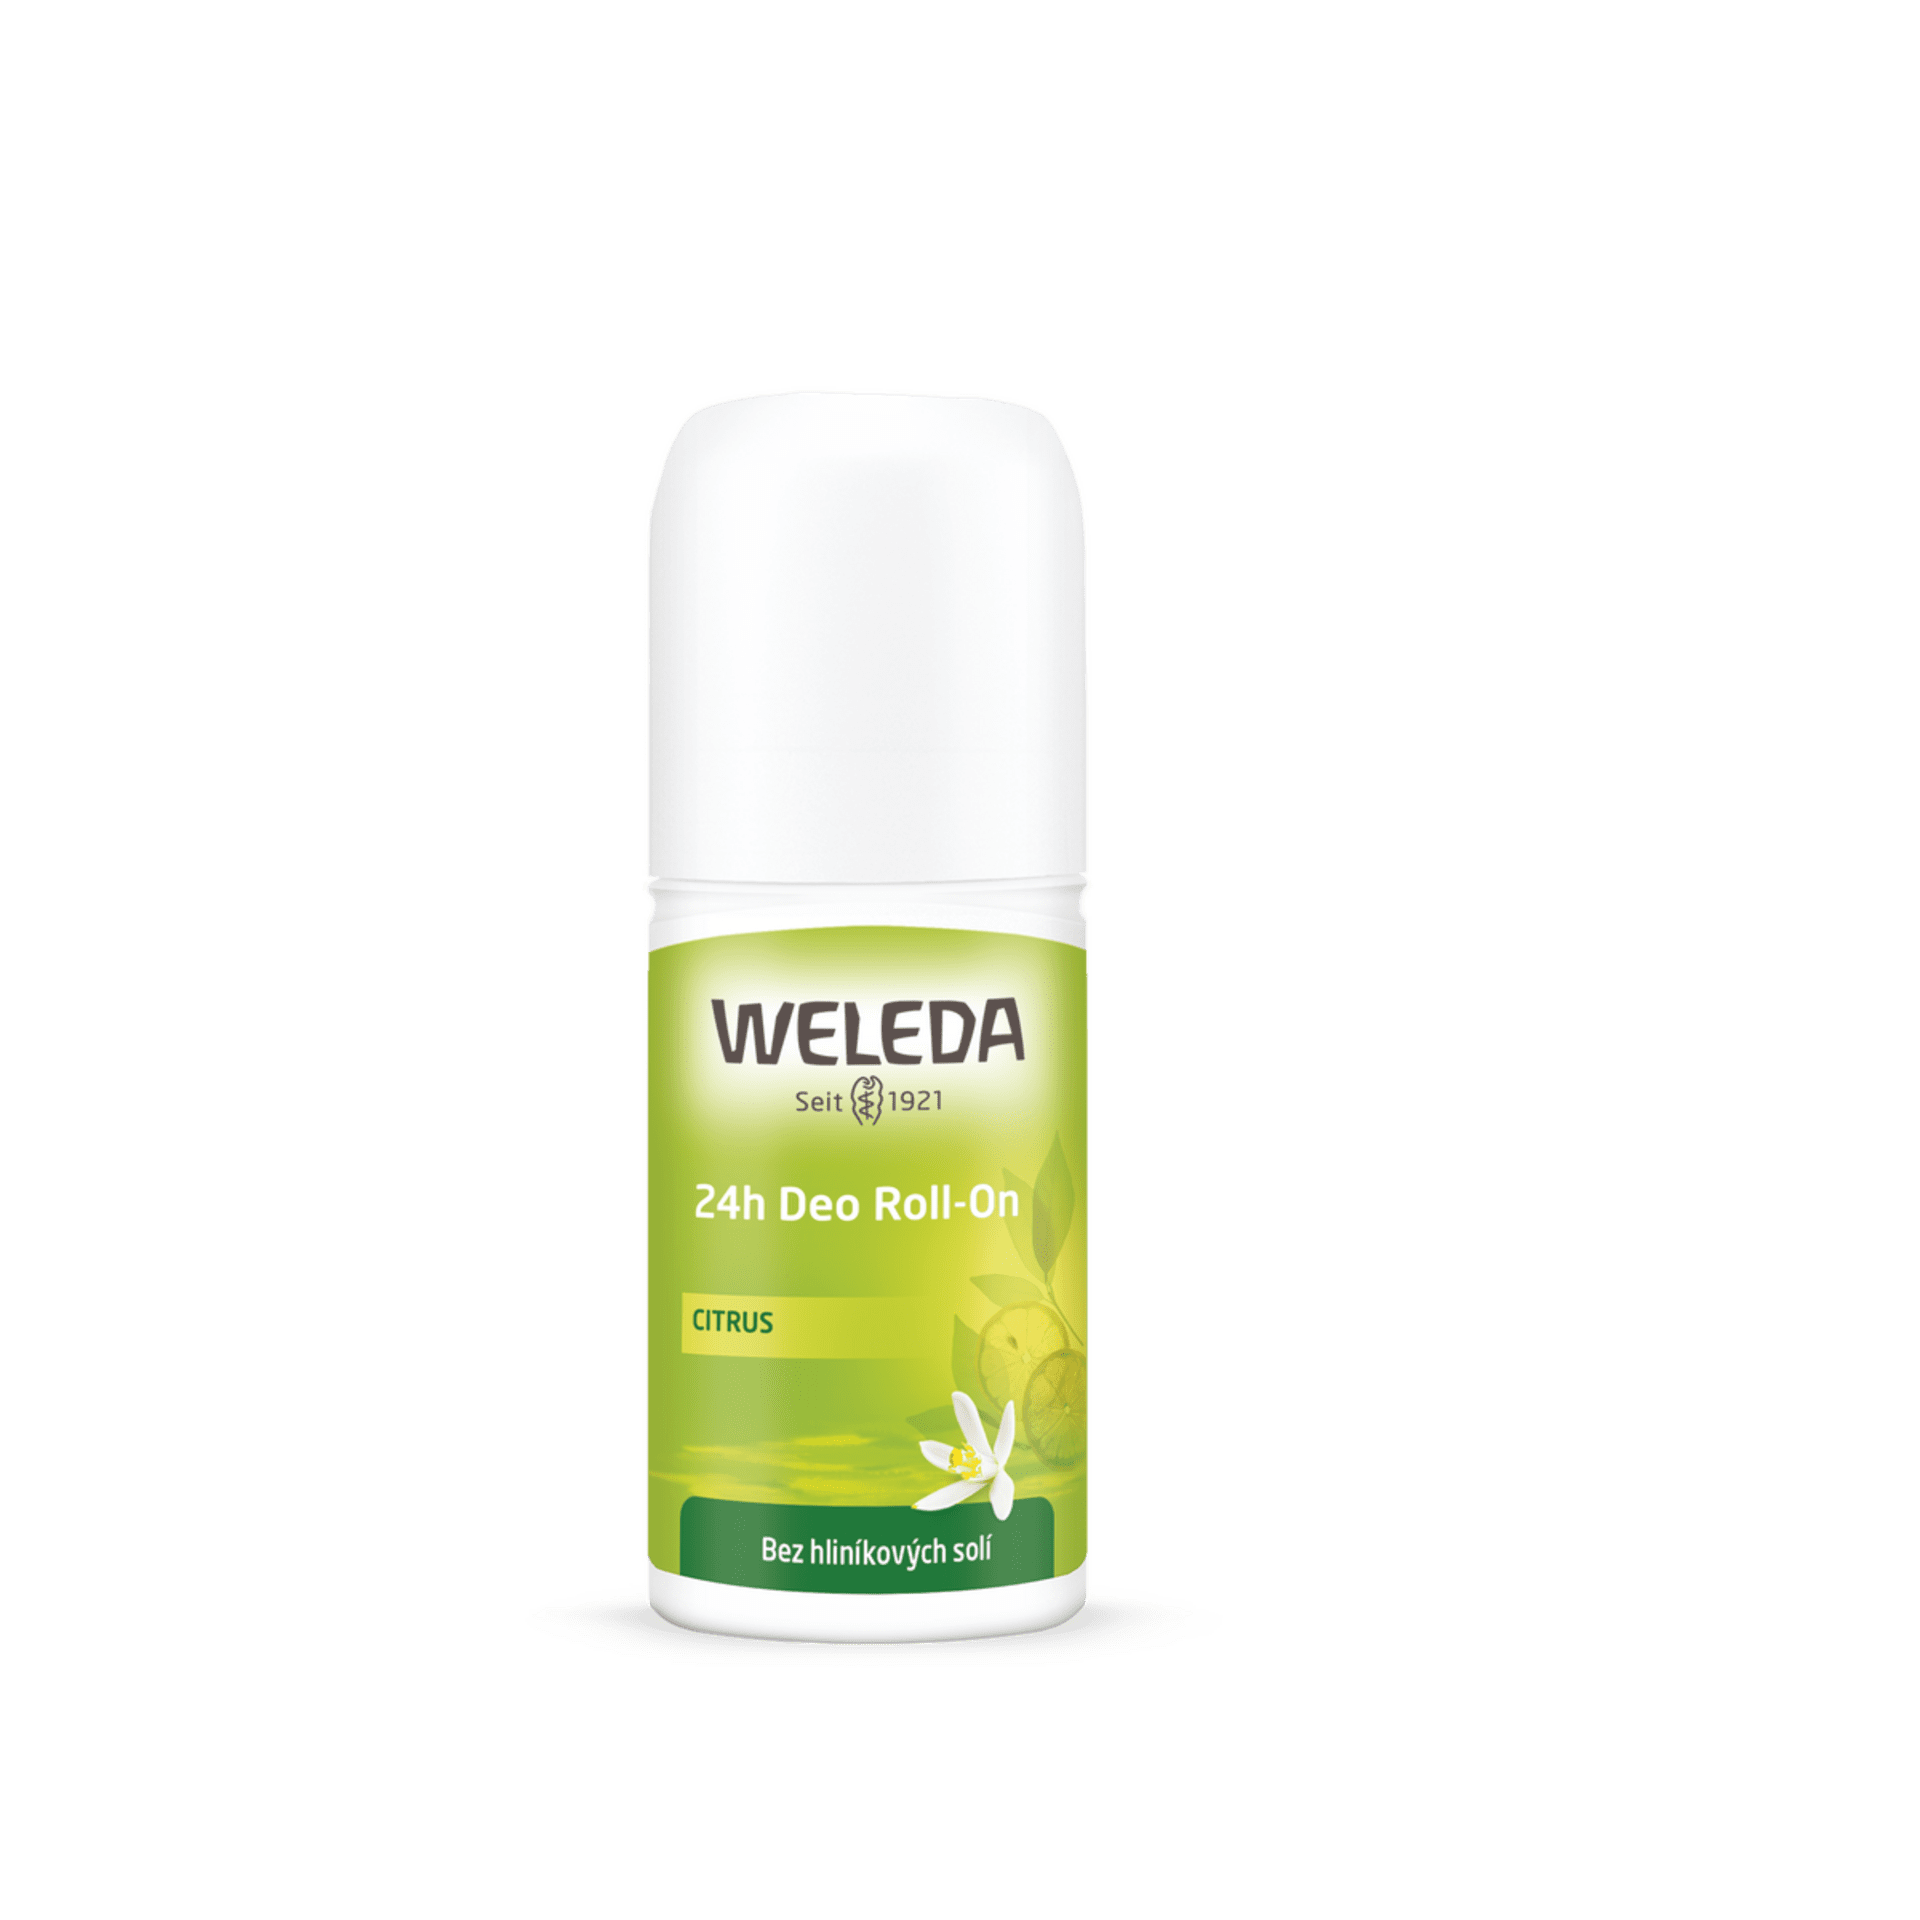 Telová kozmetika - WELEDA CITRUS 24h Deo Roll-on bez hliníkových solí 1x50 ml